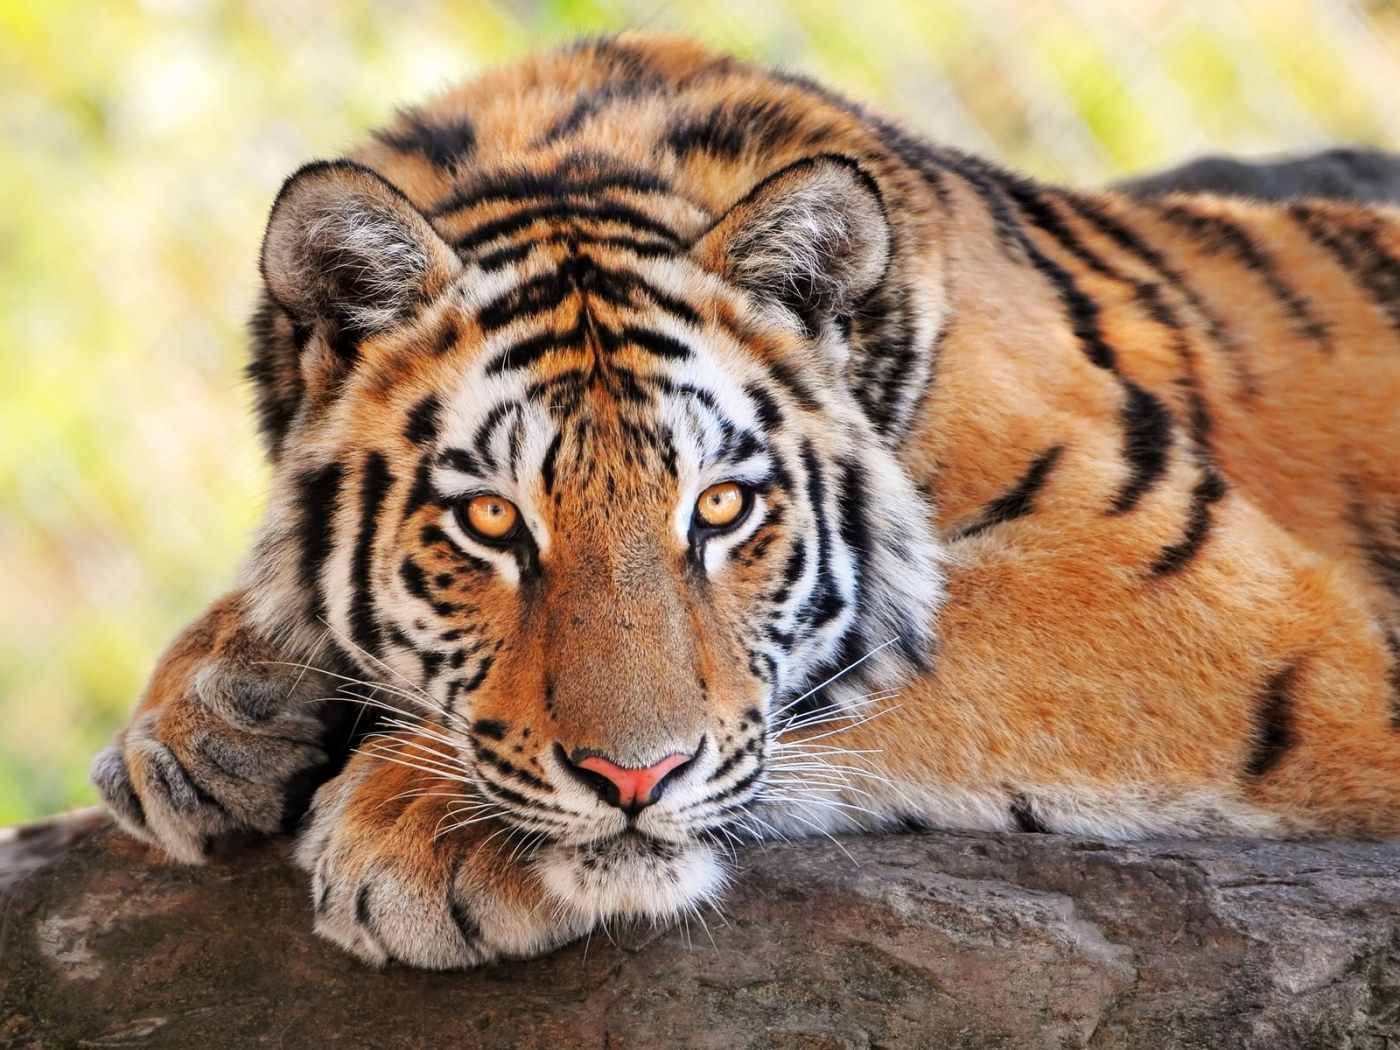 Скачать обои бесплатно Животные, Тигры картинка на рабочий стол ПК